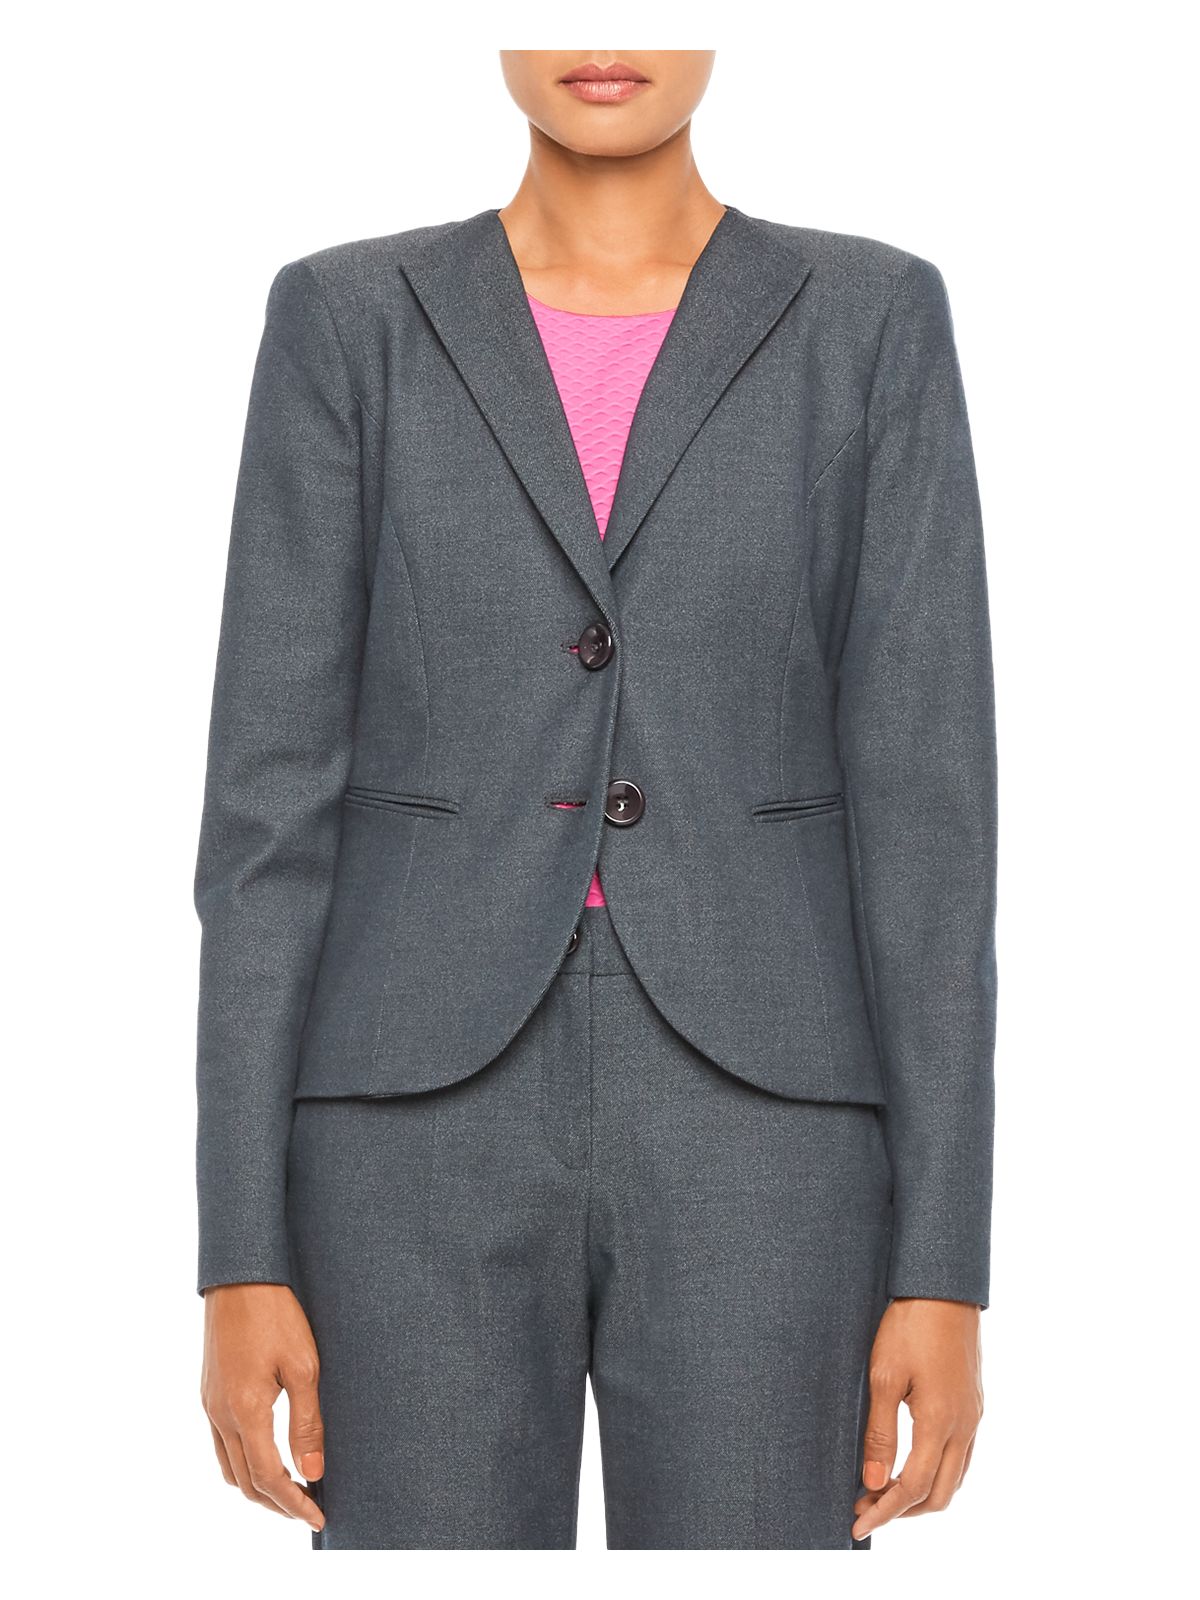 Emporio Armani Womens Wear To Work Blazer Jacket